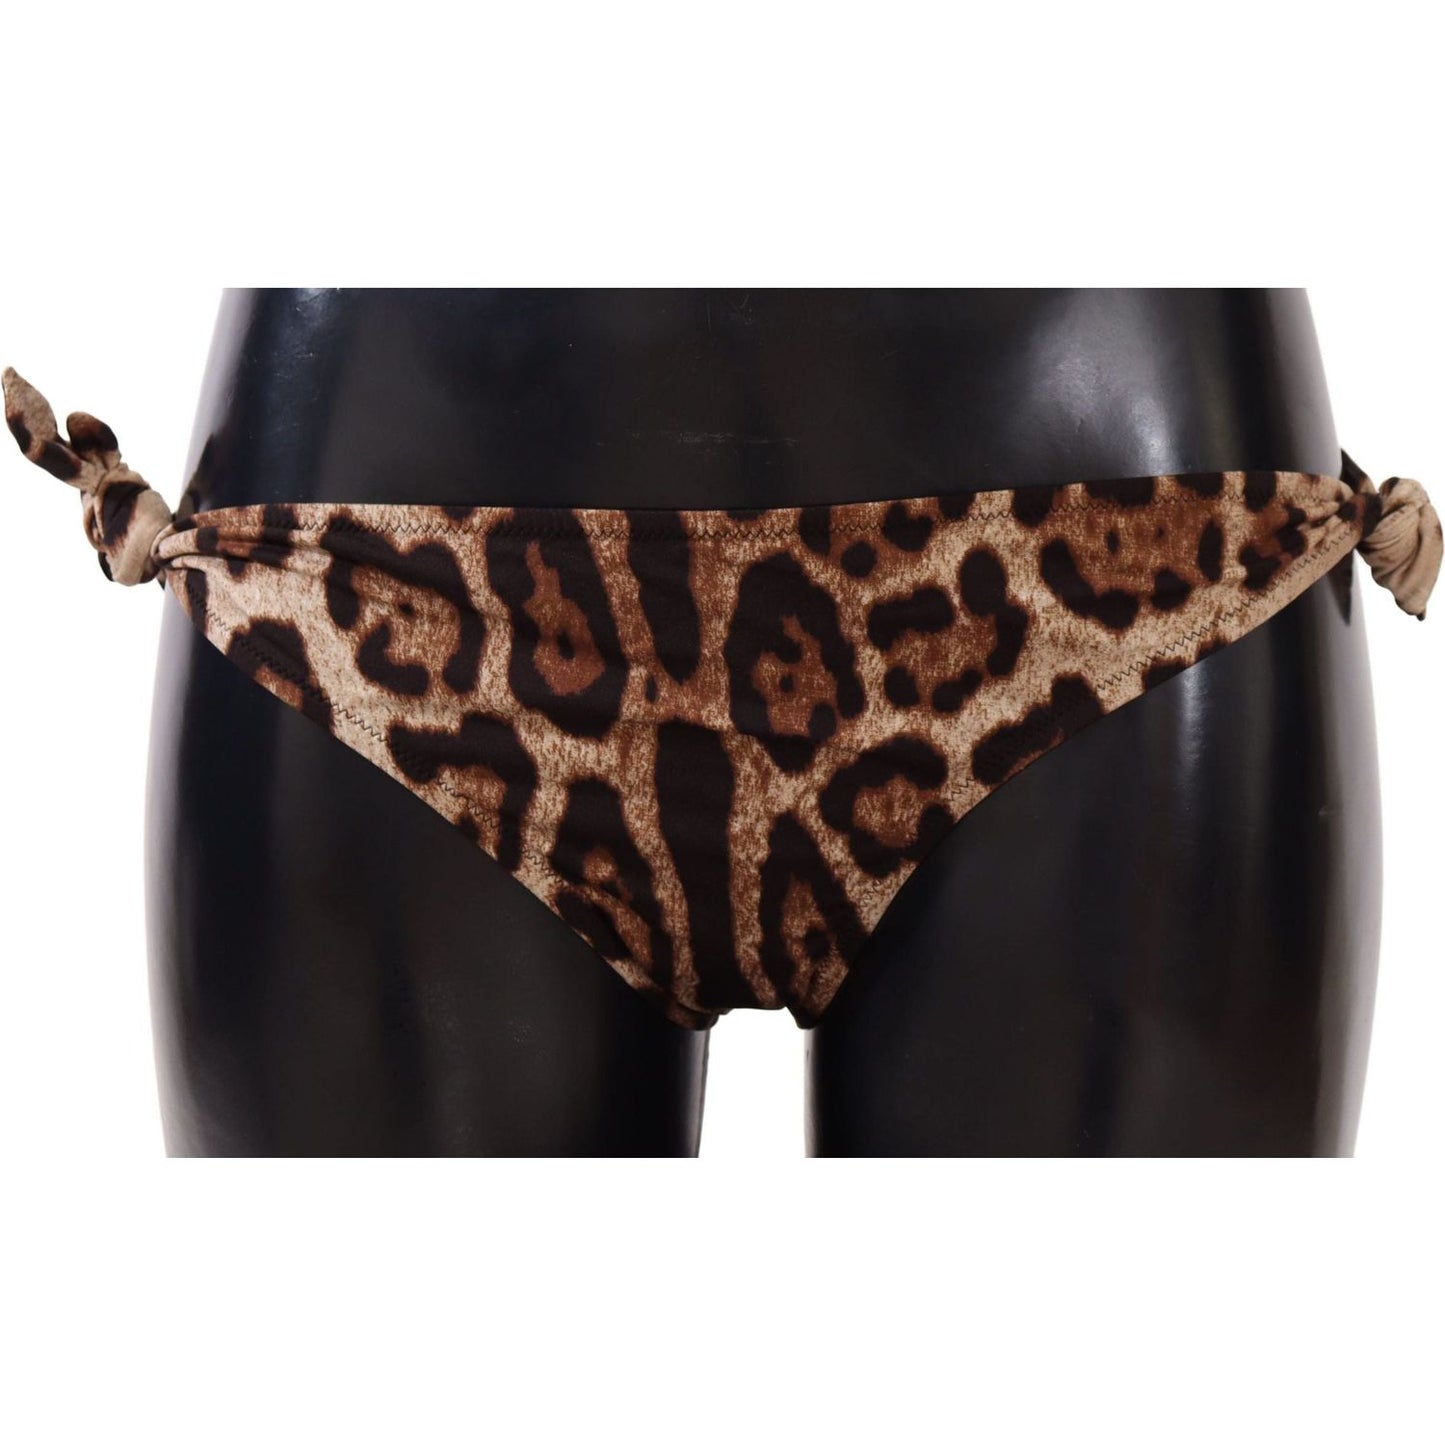 Dolce & Gabbana Bikini Bottom Brown Leopard Print Swimsuit Swimwear bikini-bottom-brown-leopard-print-swimsuit-swimwear WOMAN SWIMWEAR IMG_8327-scaled-f8481cd4-c81.jpg